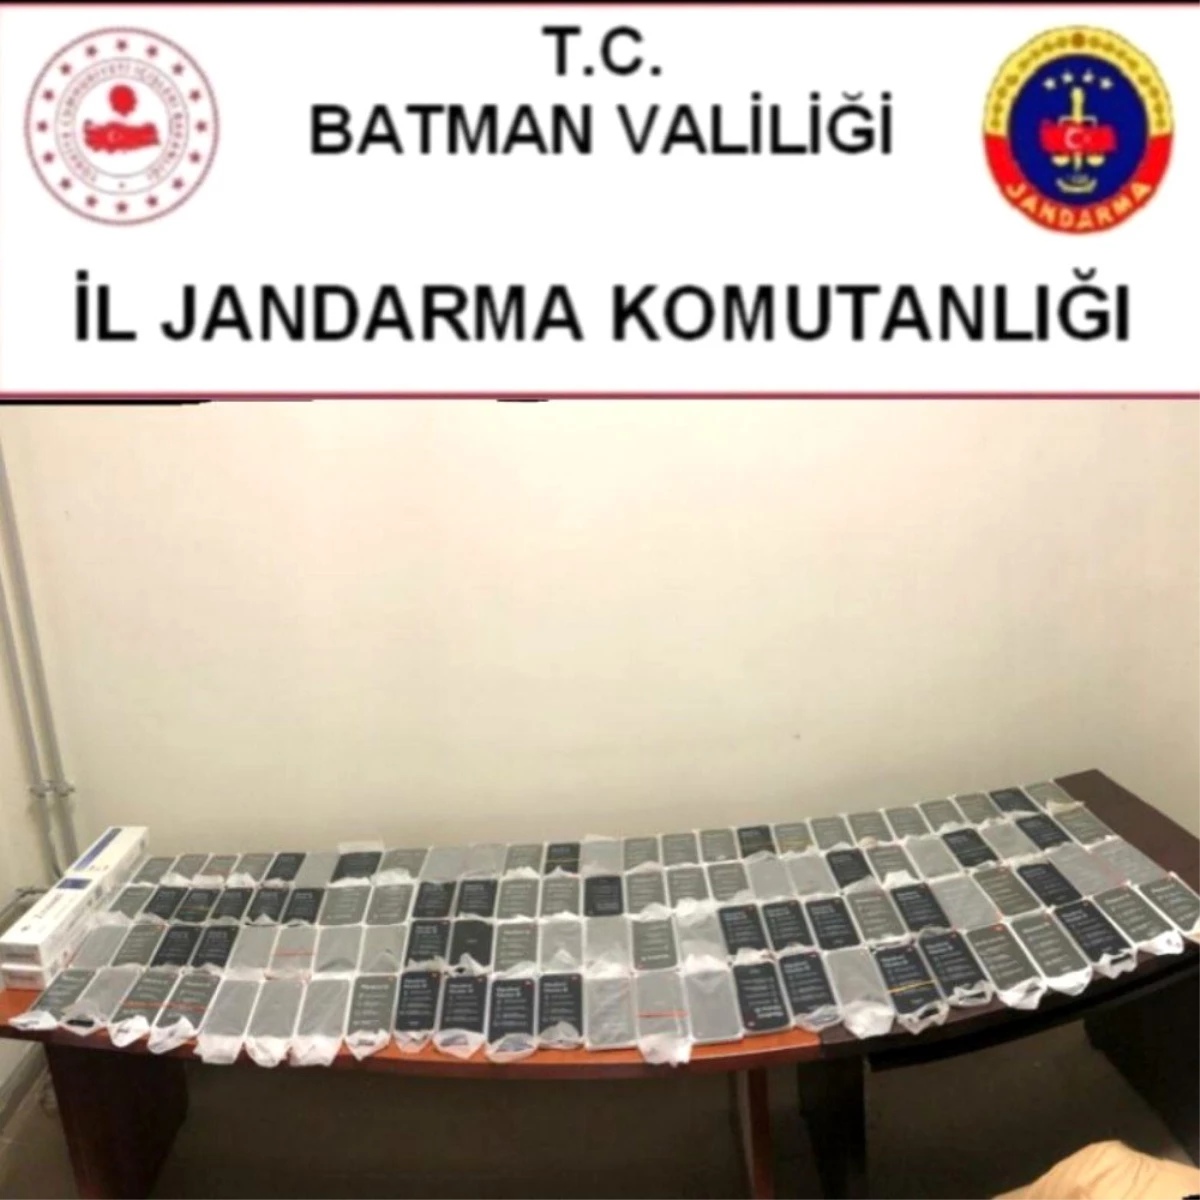 Batman\'da 100 adet kaçak cep telefonu ele geçirildi